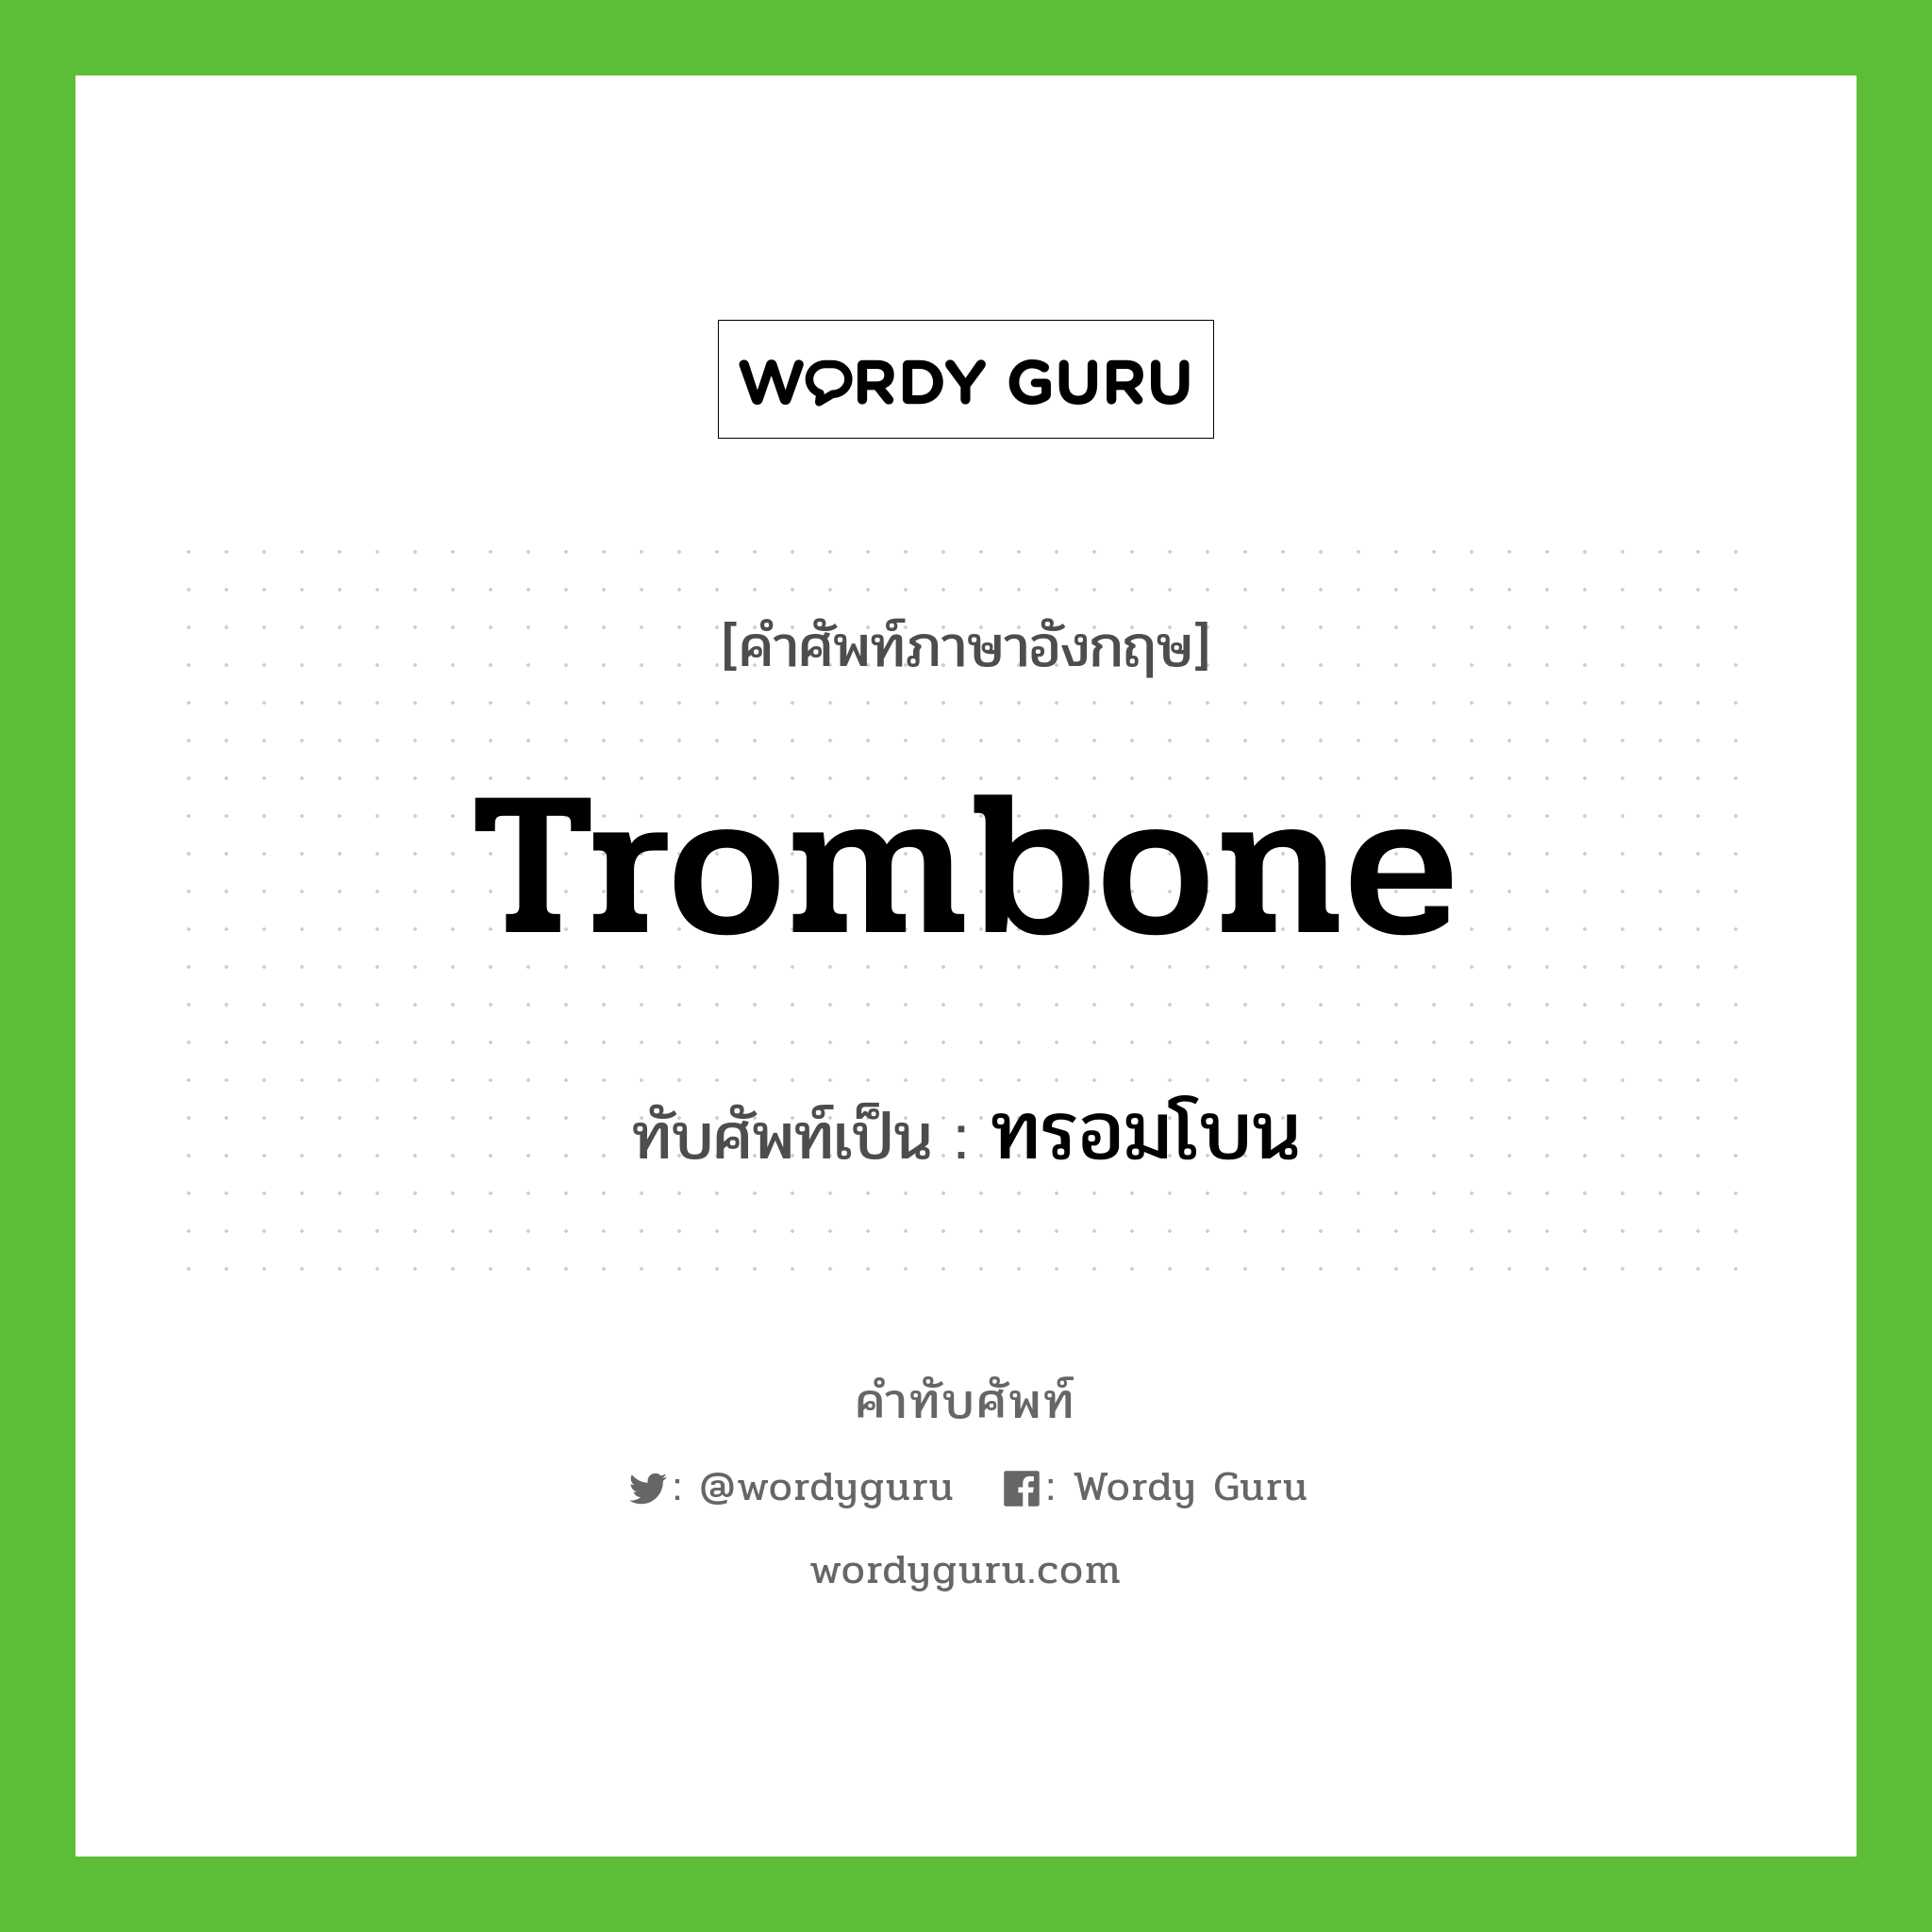 ทรอมโบน เขียนอย่างไร?, คำศัพท์ภาษาอังกฤษ ทรอมโบน ทับศัพท์เป็น trombone